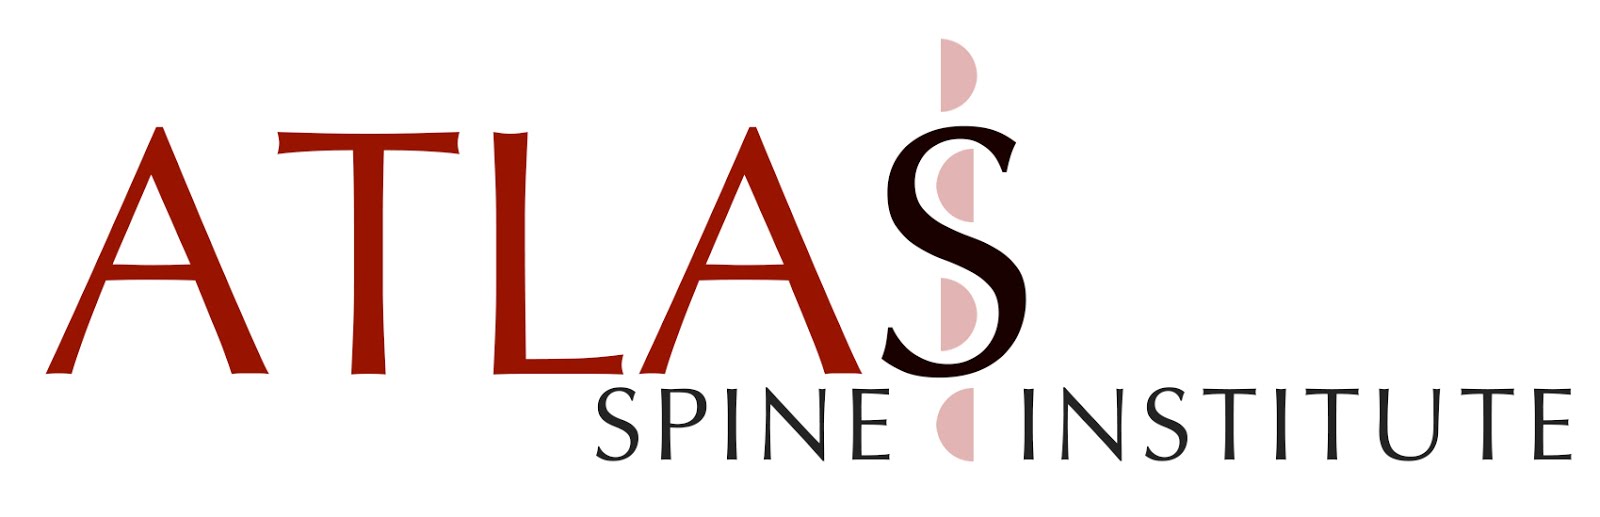 ATLAS Spine Institute